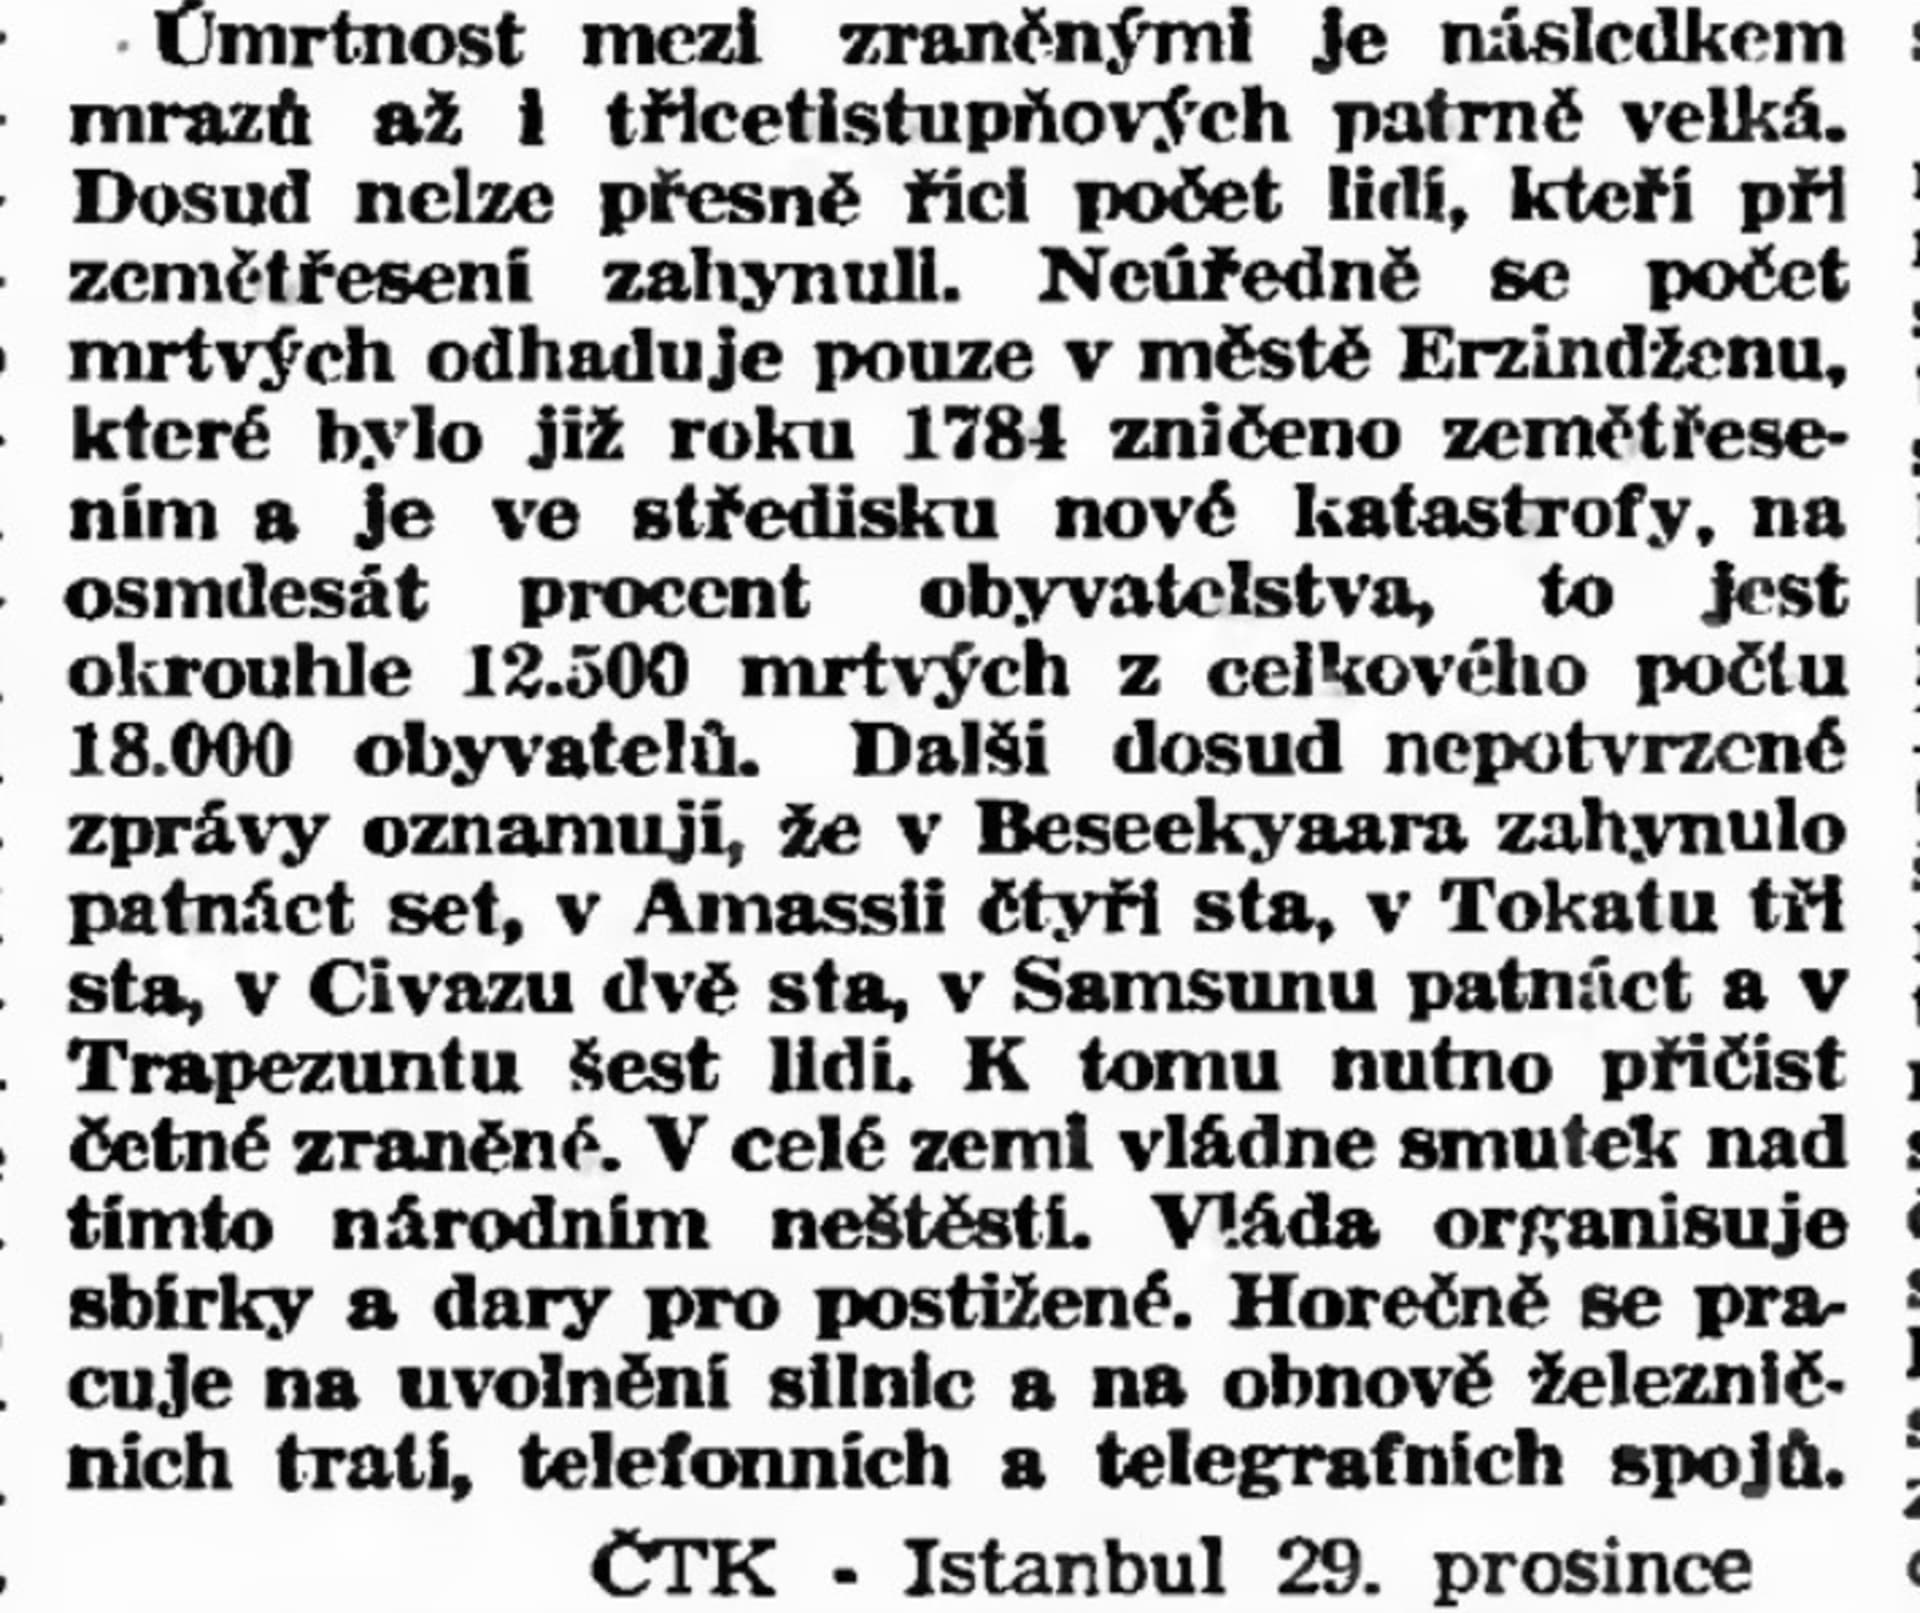 Zpráva ČTK o zemětřesení z 29. prosince 1939. Zdroj Národní digitální knihovna Kramerius.